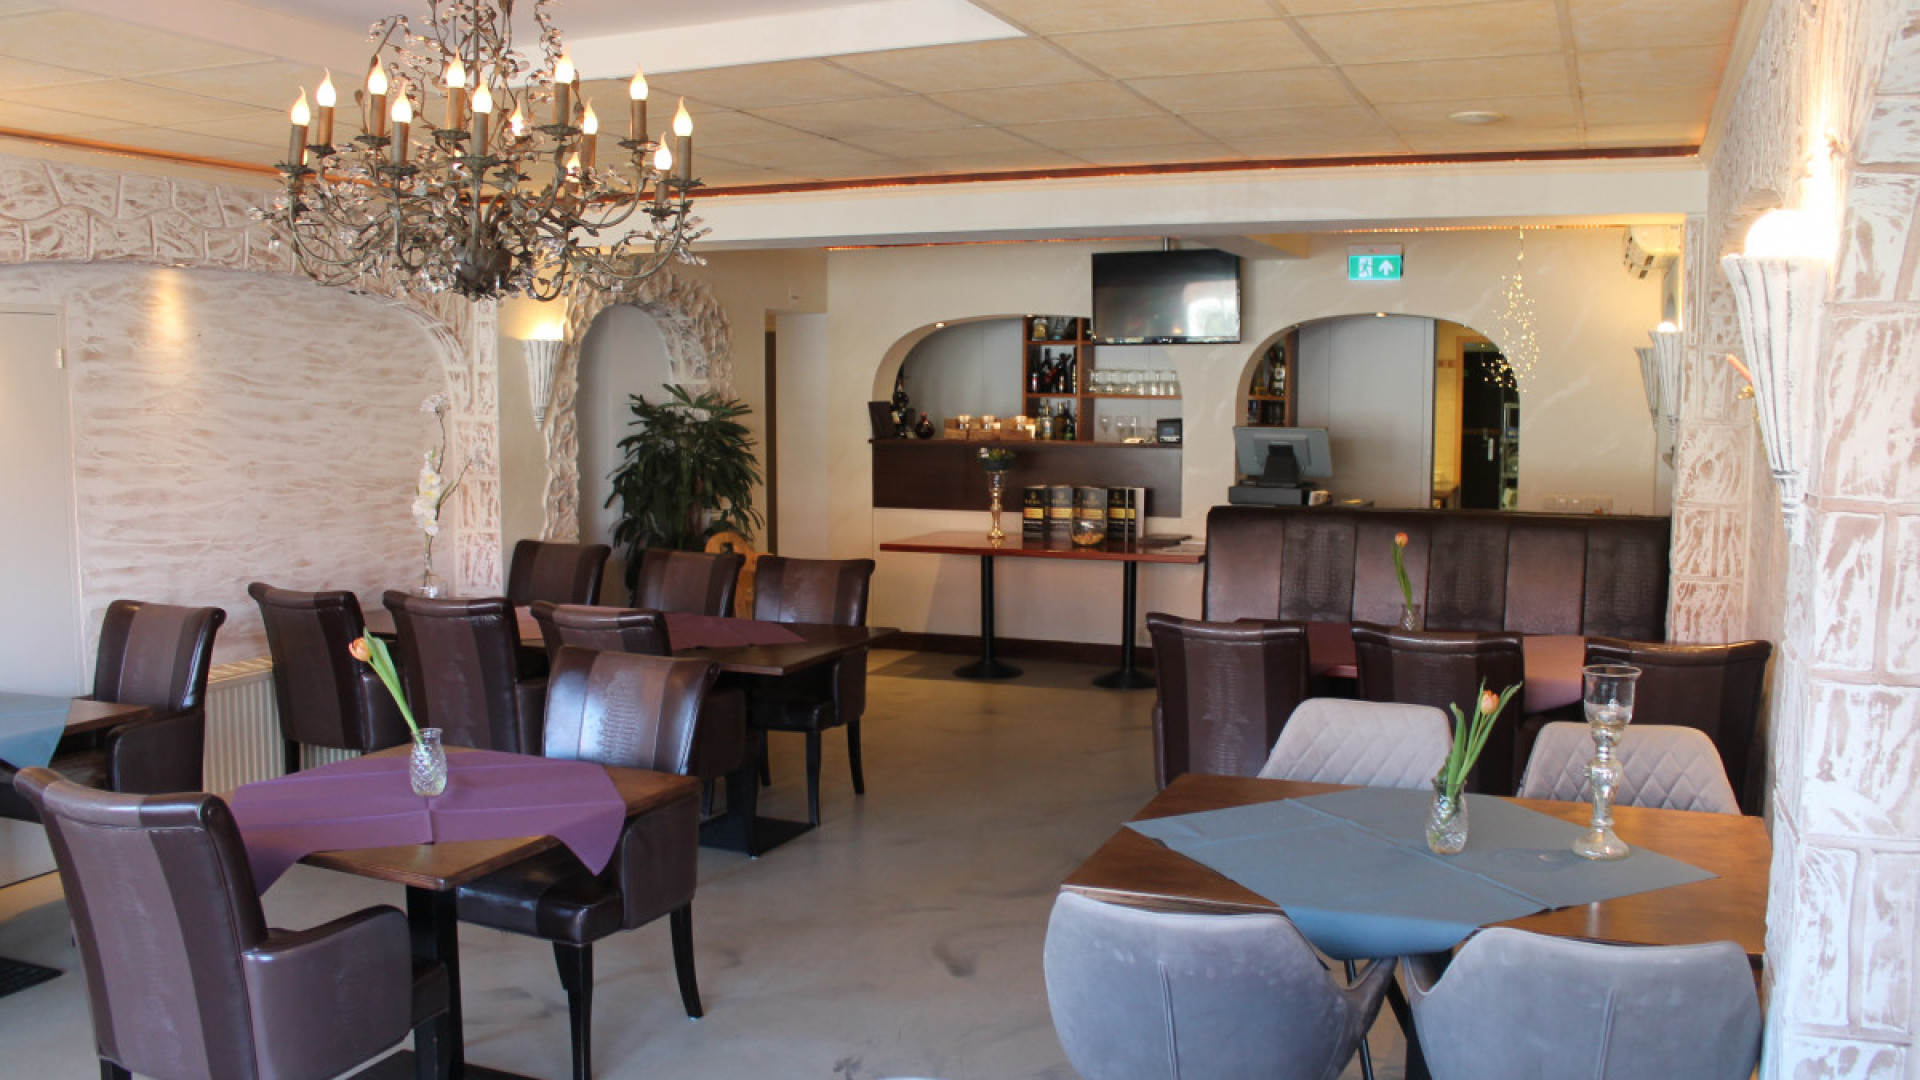 Van dit restaurant vangt LIverpool en Nederlands Elftal speler duizenden euro's per jaar! Zie foto's 4